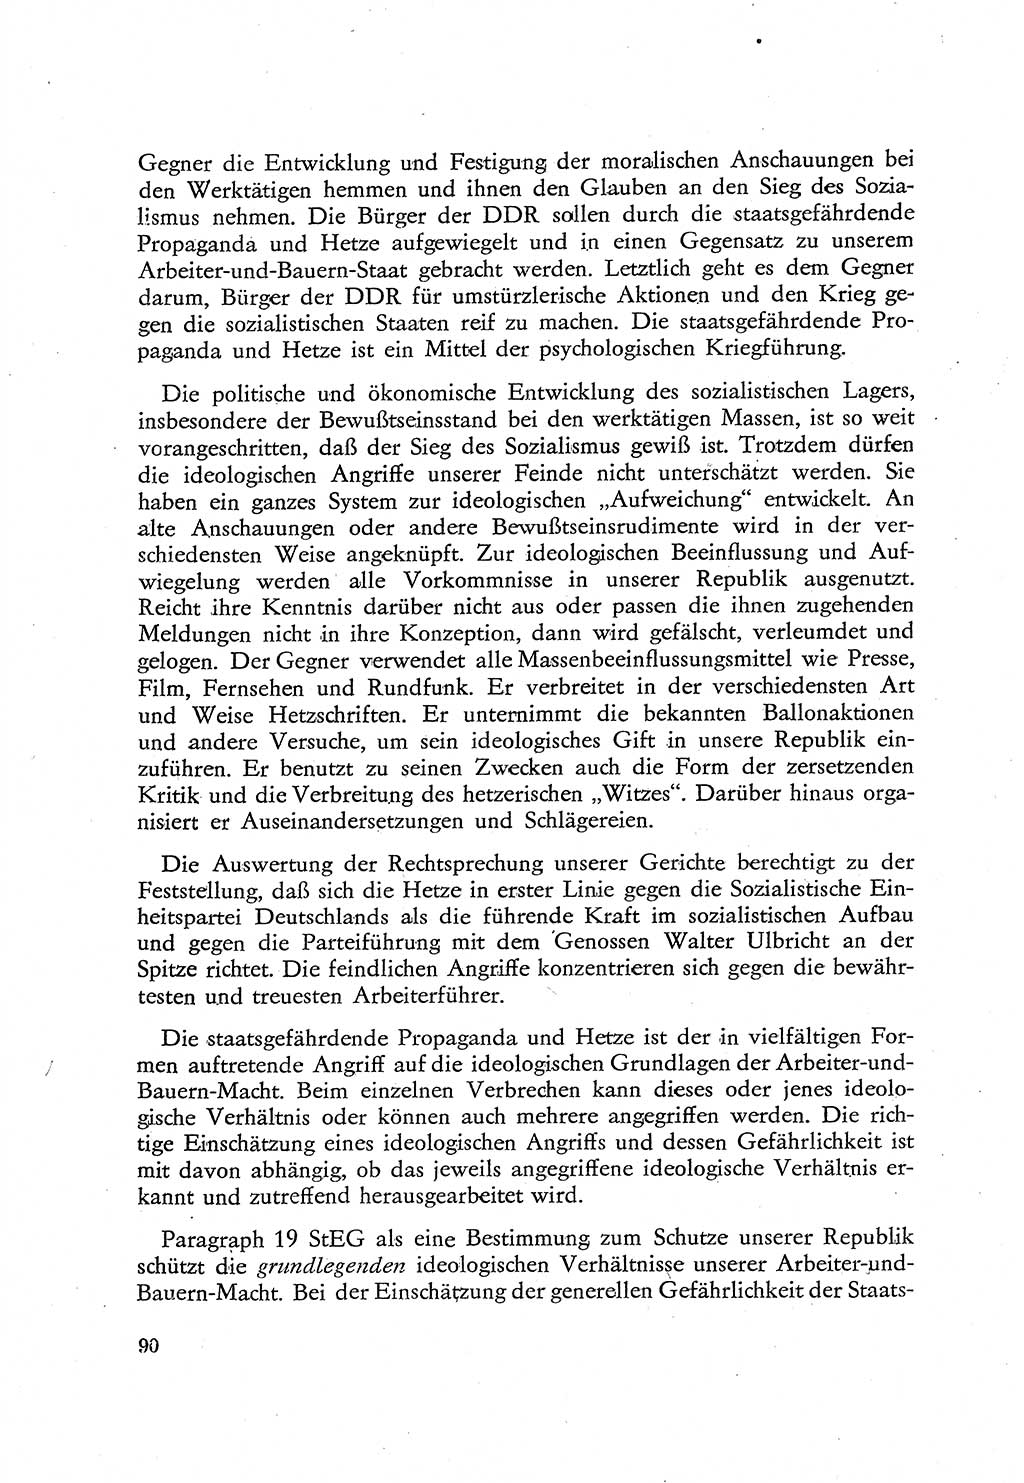 Beiträge zum Strafrecht [Deutsche Demokratische Republik (DDR)], Staatsverbrechen 1959, Seite 90 (Beitr. Strafr. DDR St.-Verbr. 1959, S. 90)